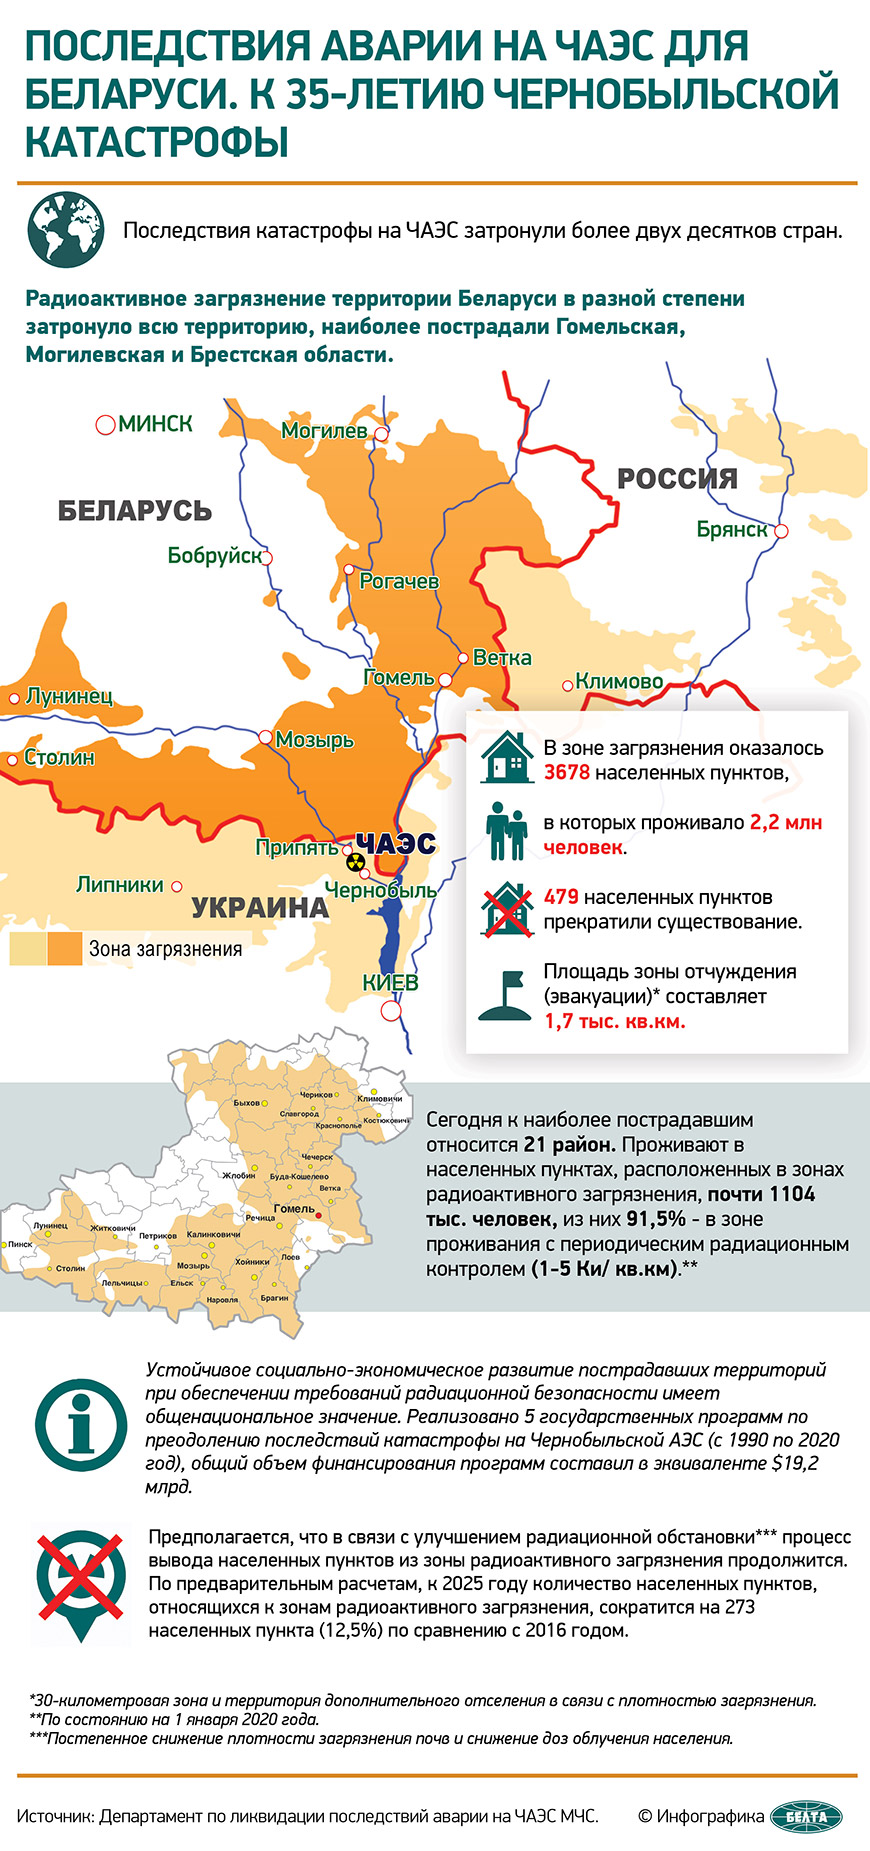 Последствия аварии на ЧАЭС для Беларуси. К 35-летию чернобыльской катастрофы